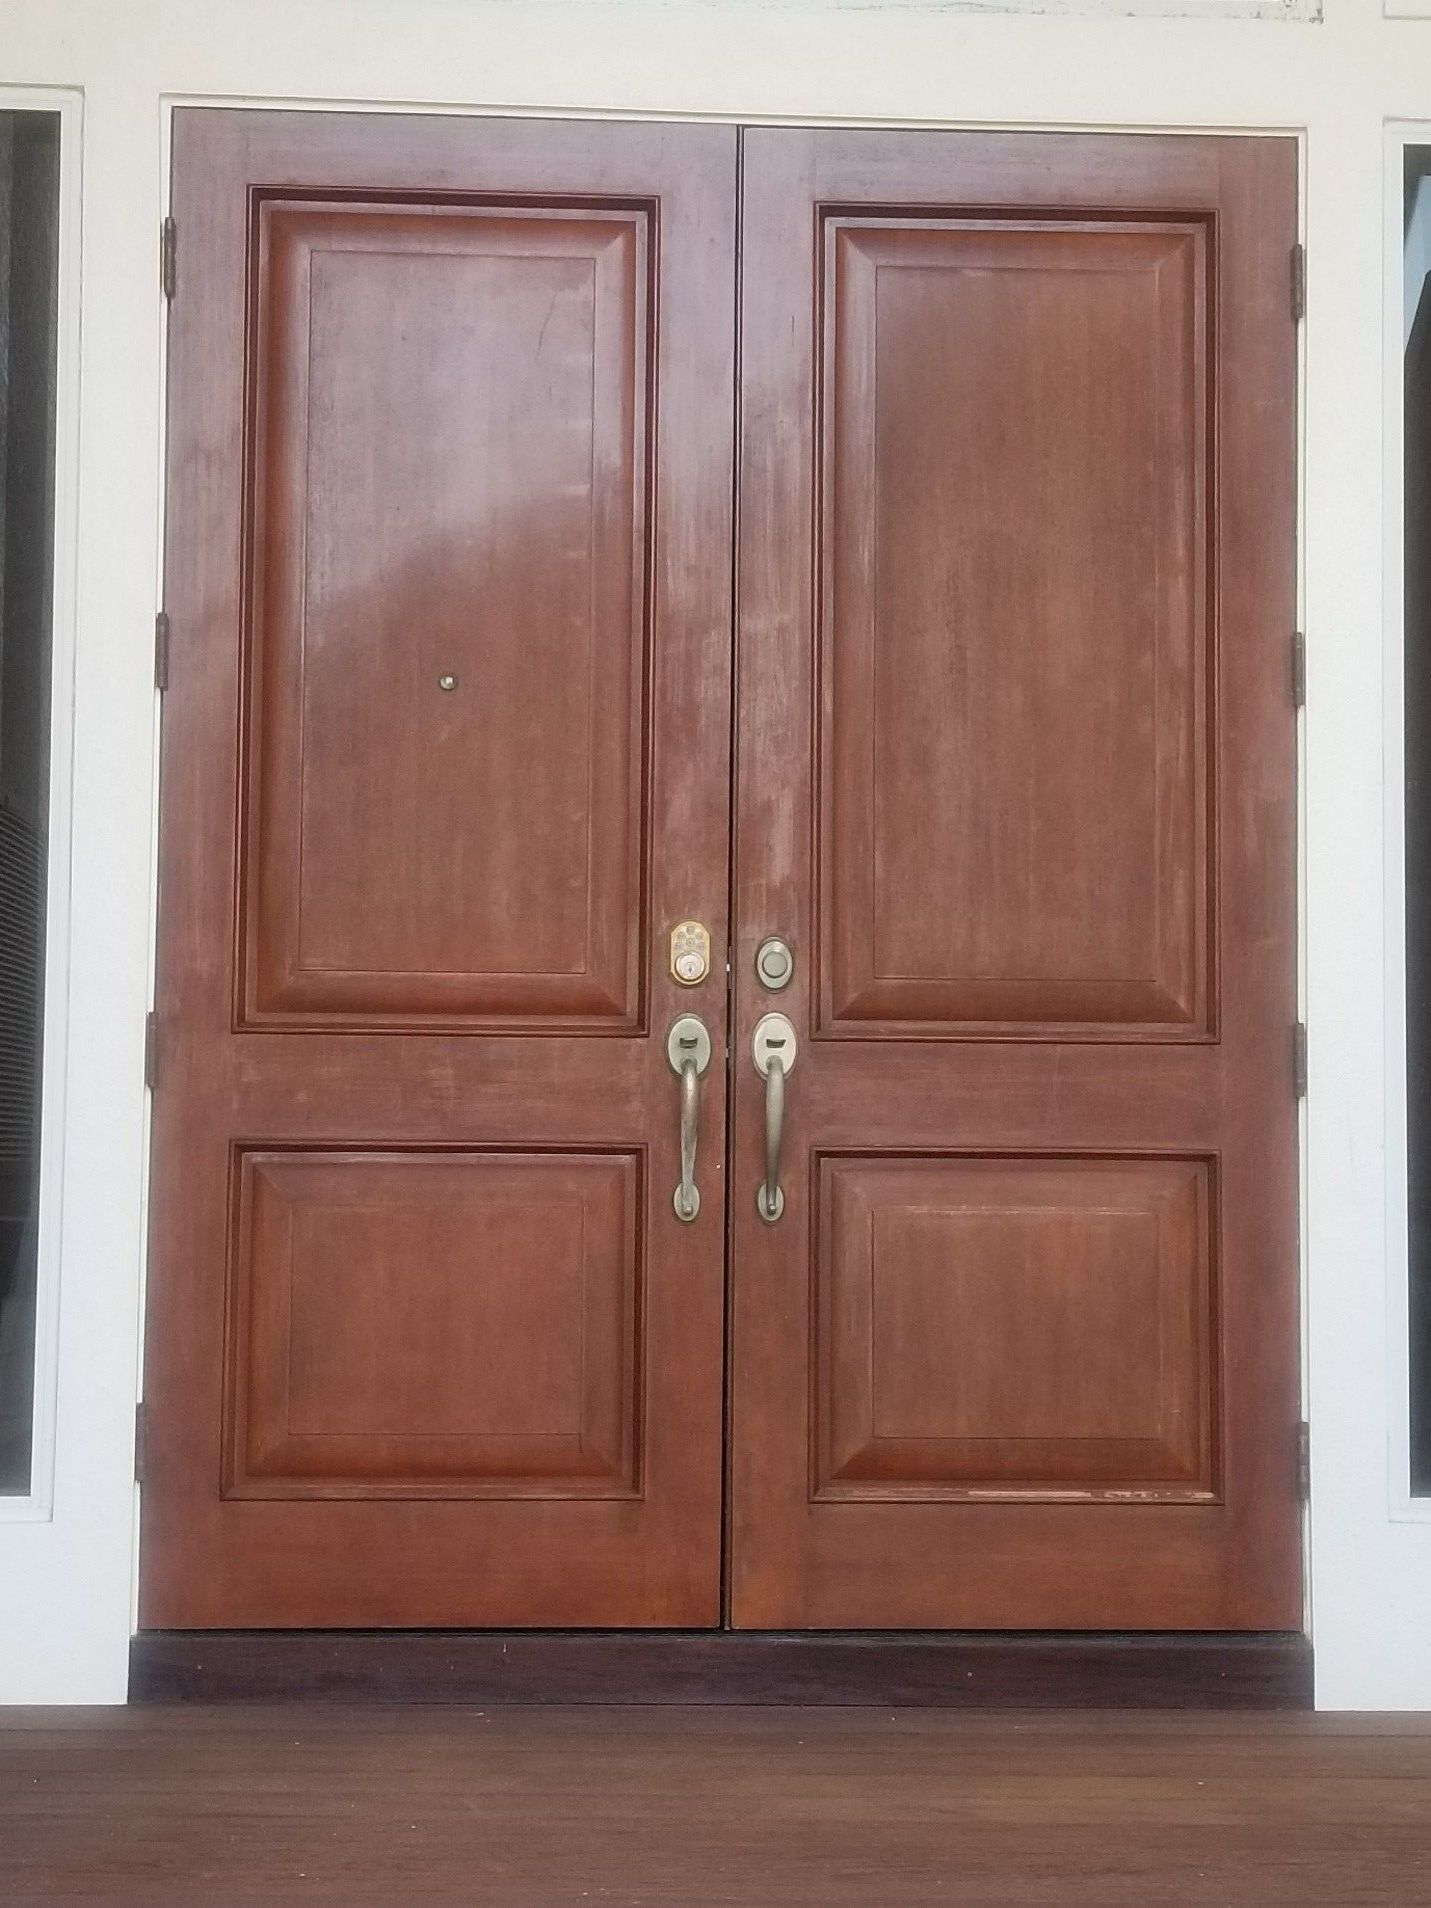 doors-and-florida-sun-1.jpg